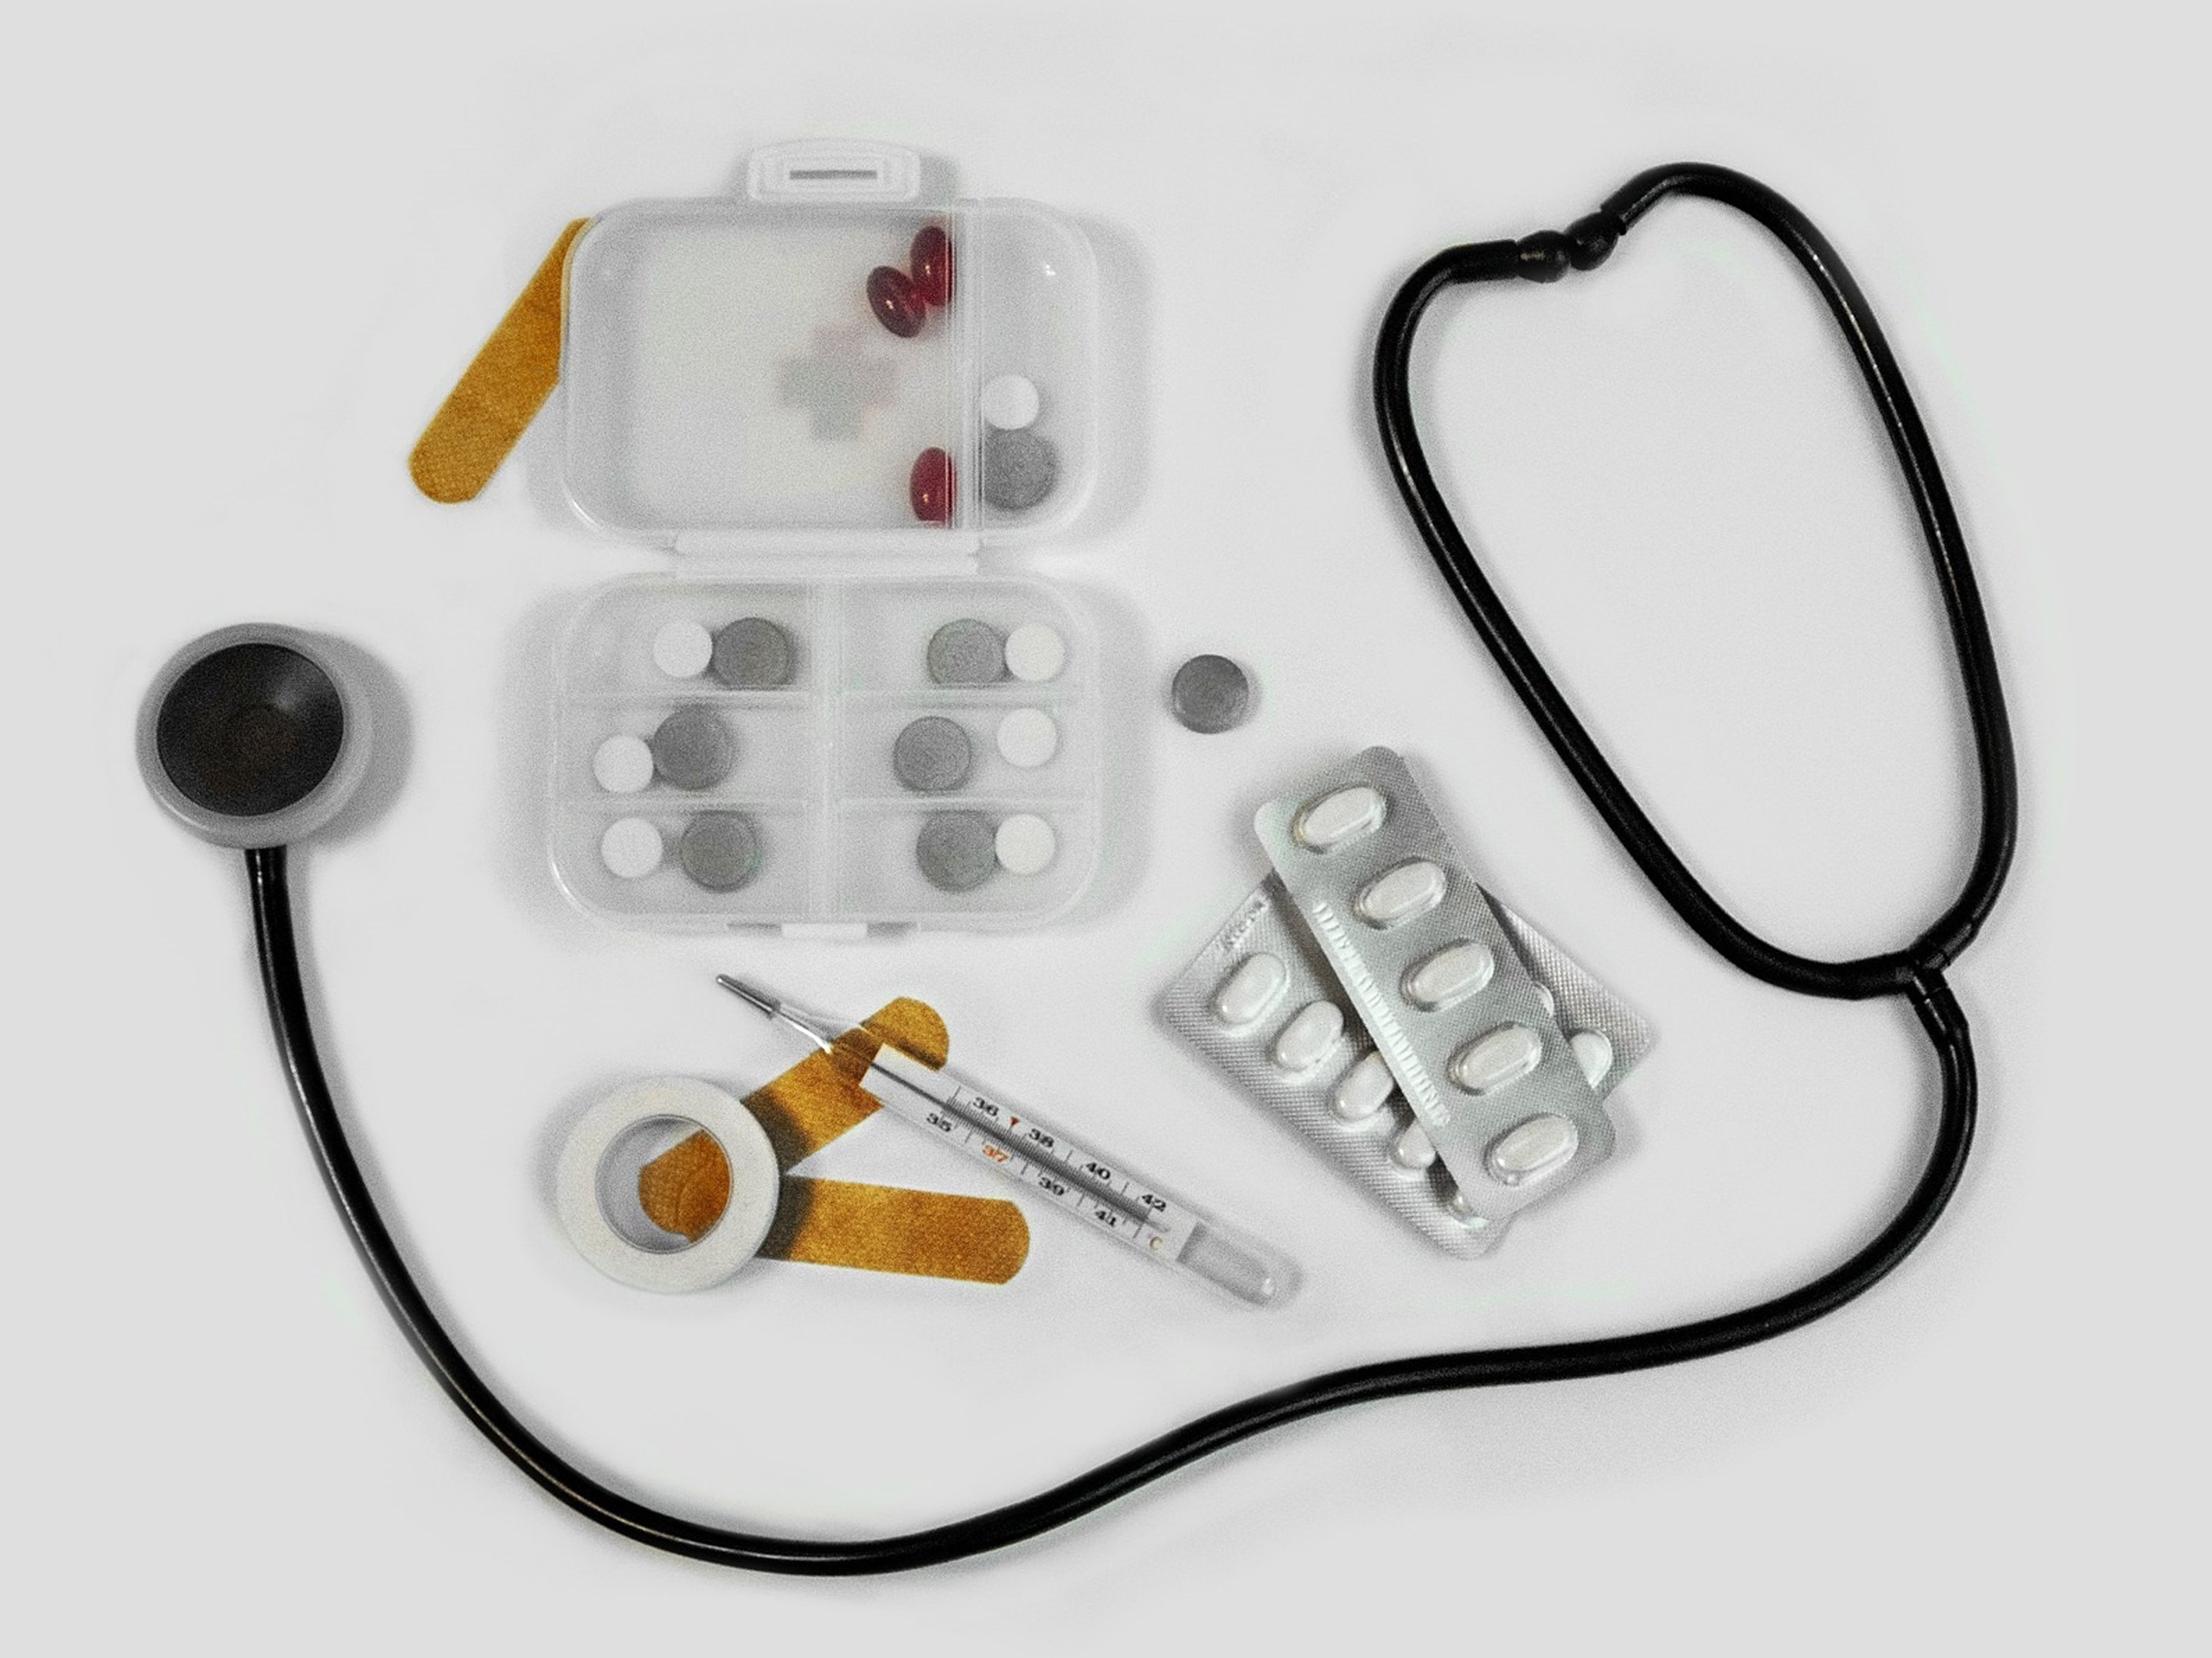 Beispiel Medikamente und Medizin Produkte -Quelle: Pressestelle Landratsamt Ludwigsburg